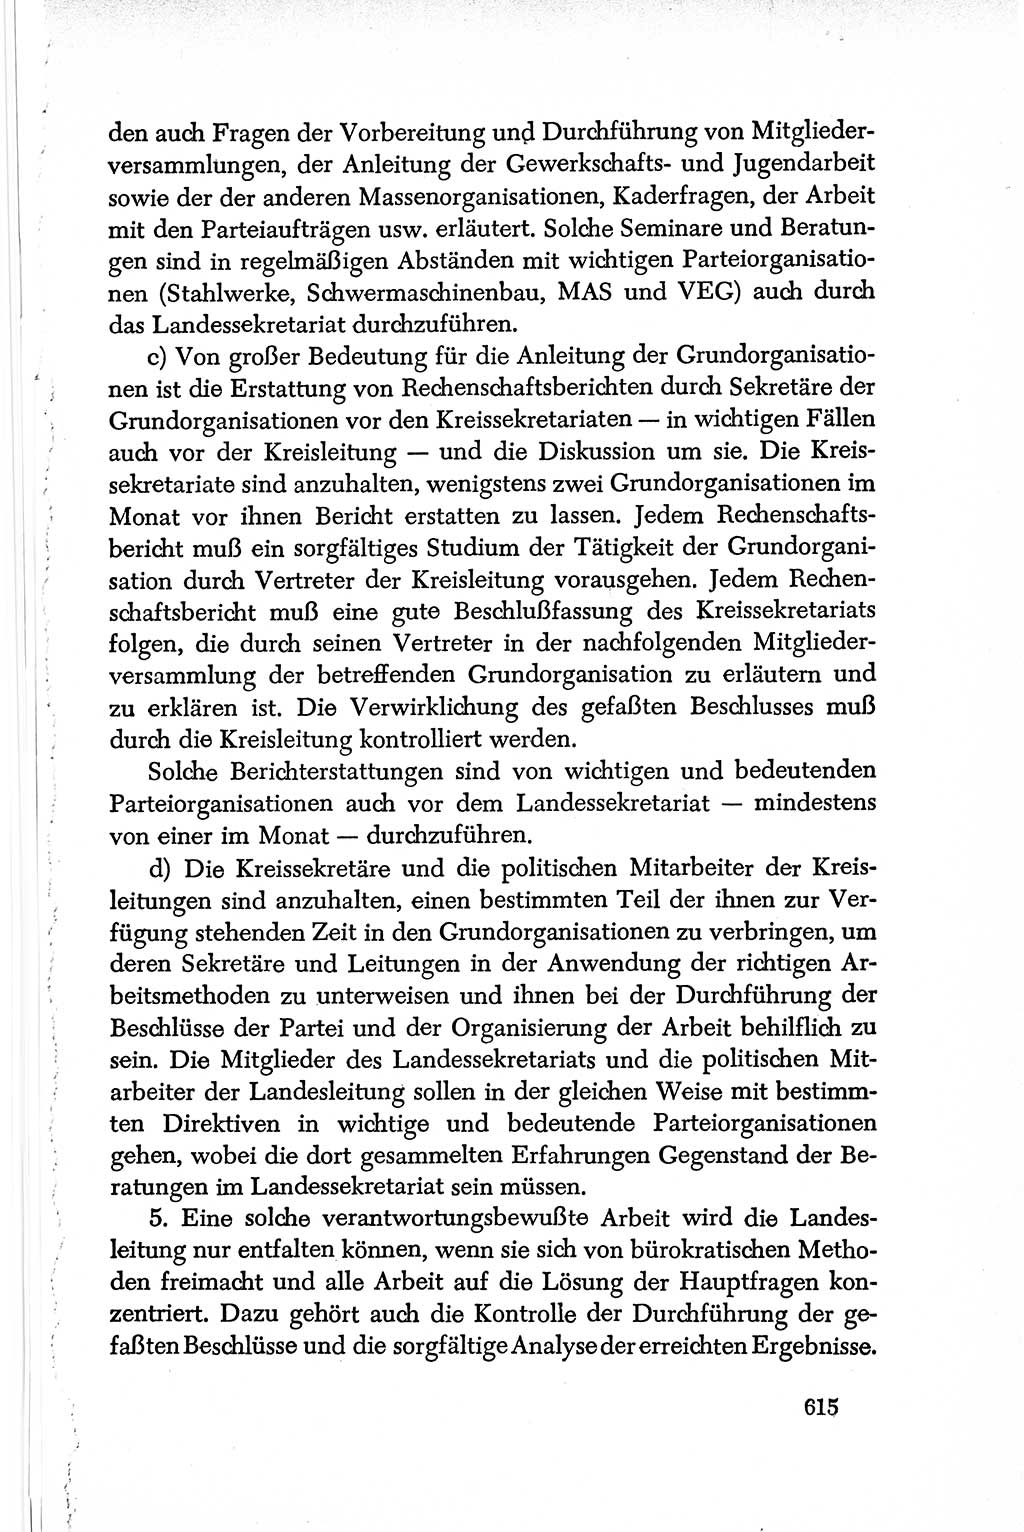 Dokumente der Sozialistischen Einheitspartei Deutschlands (SED) [Deutsche Demokratische Republik (DDR)] 1950-1952, Seite 615 (Dok. SED DDR 1950-1952, S. 615)